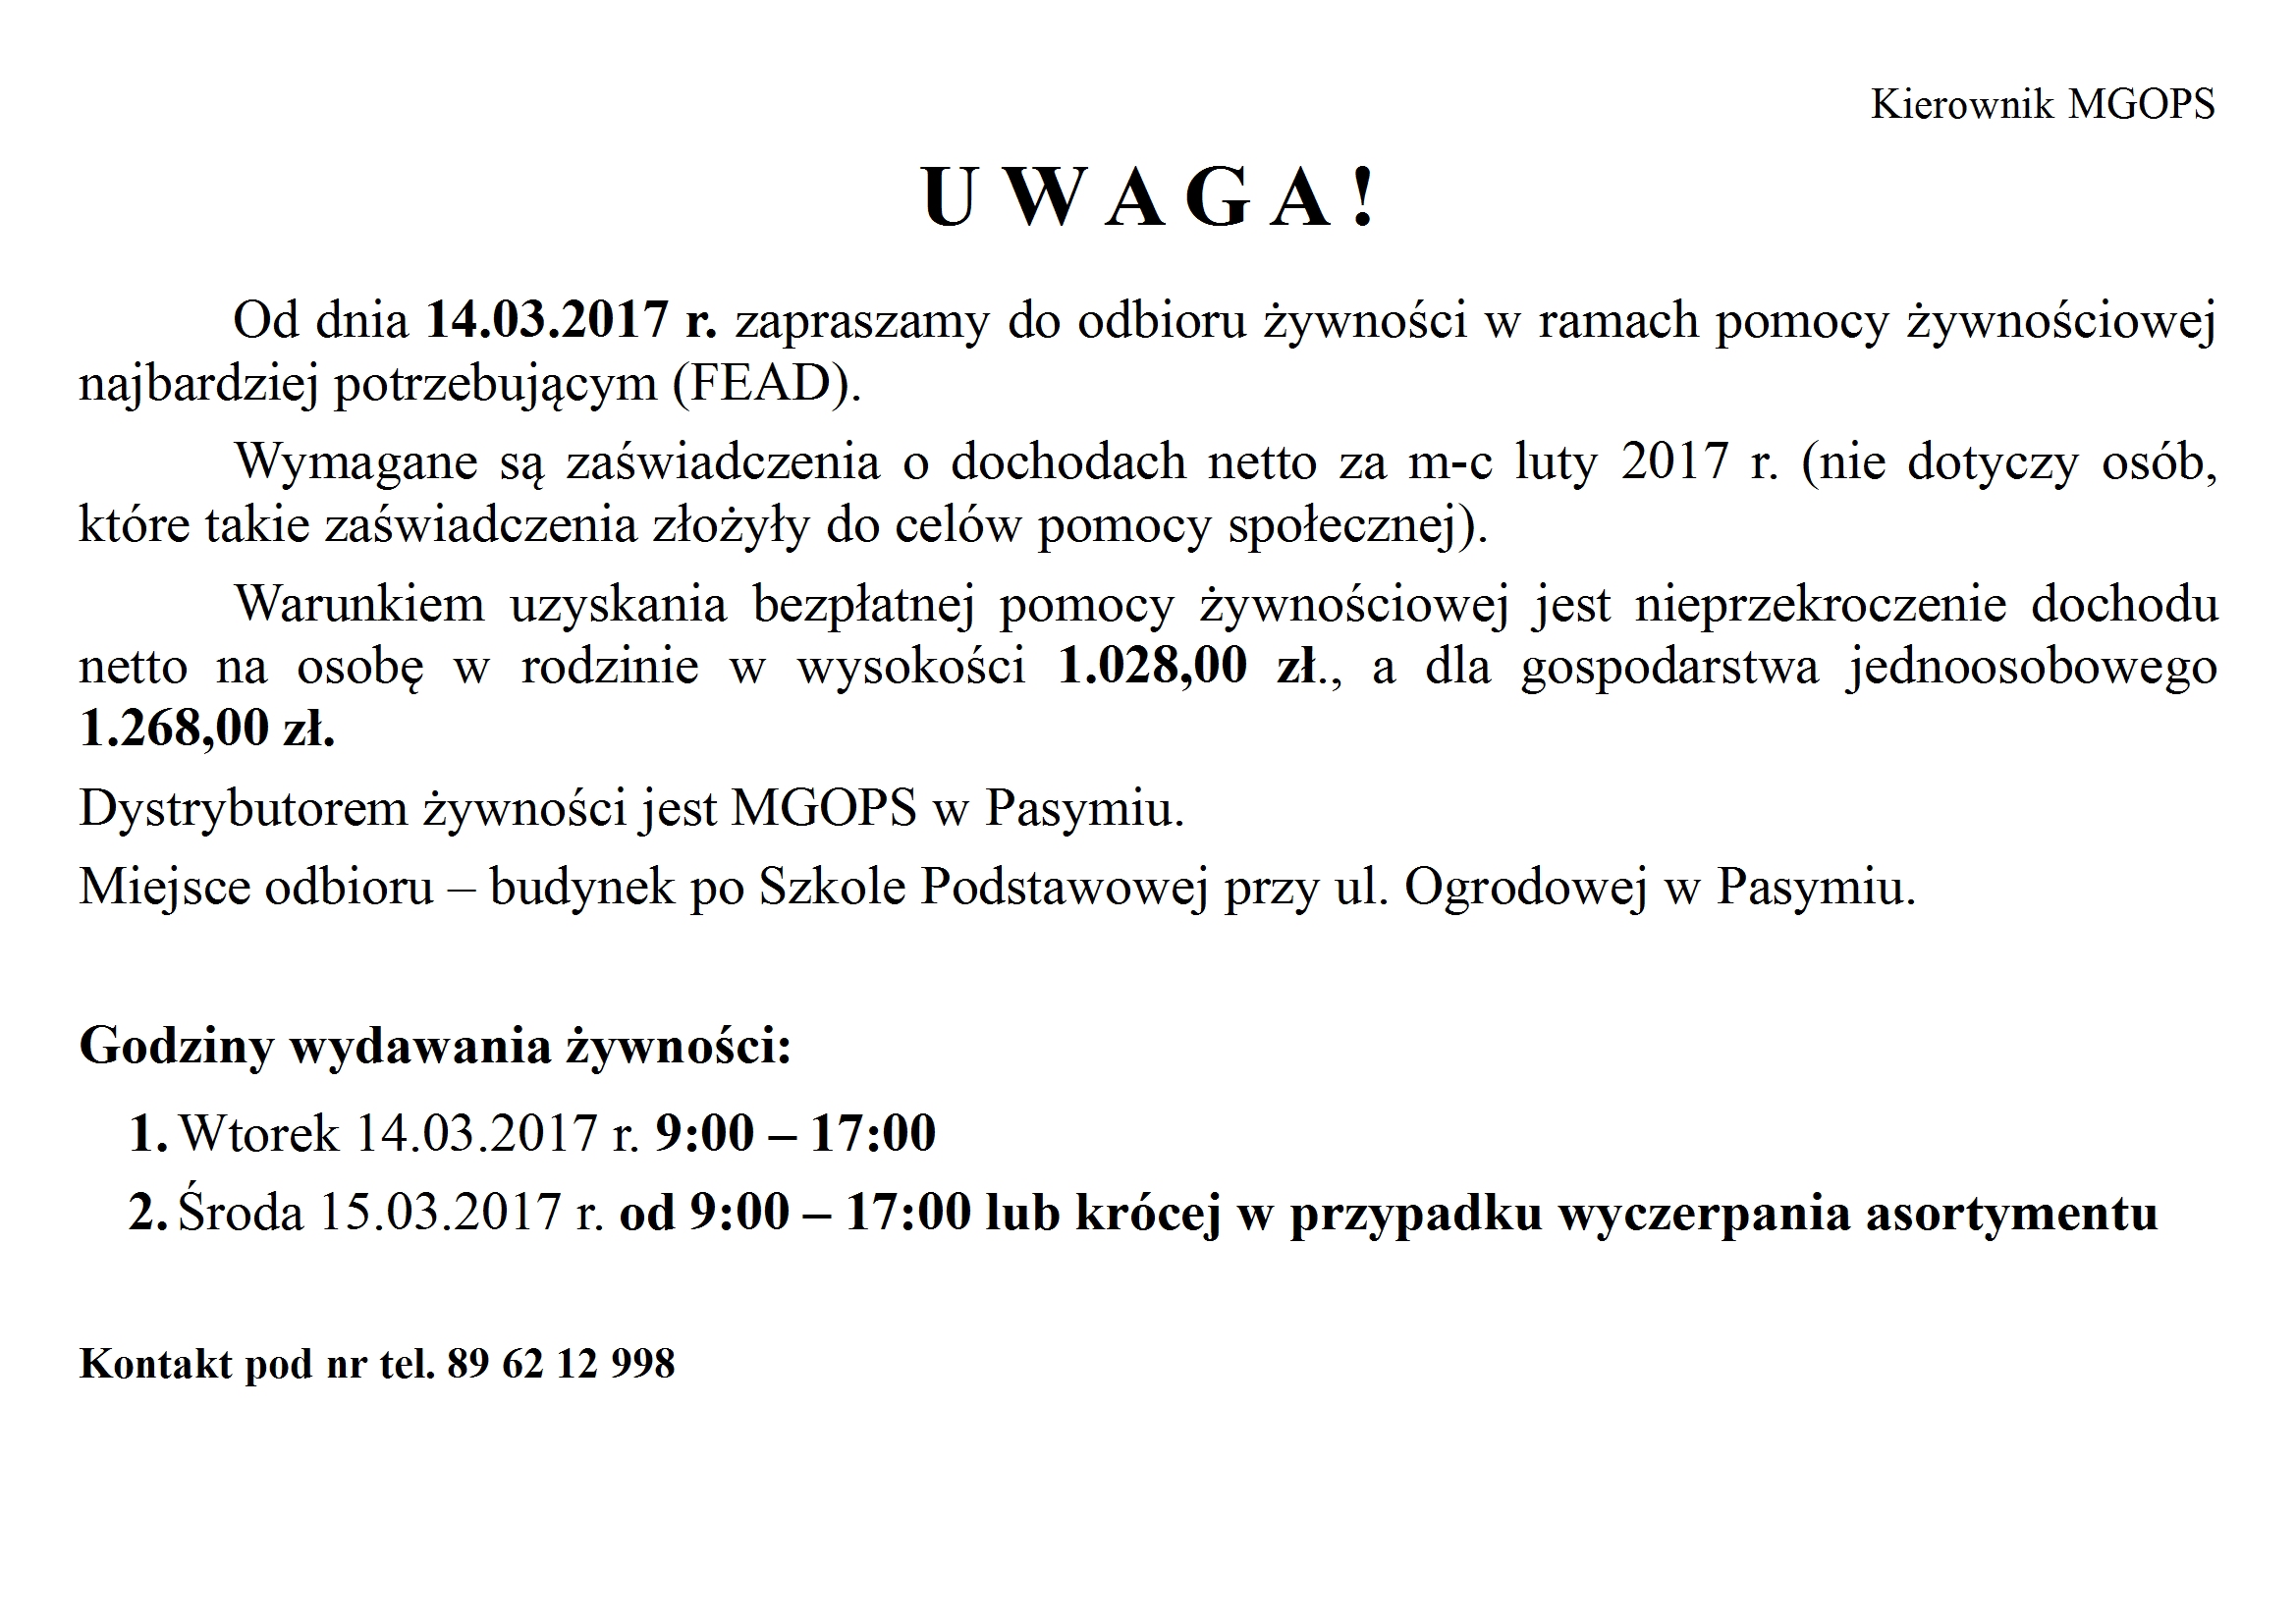 https://m.powiatszczycienski.pl/2017/03/orig/ogloszenia-iii-2017-10170.jpg